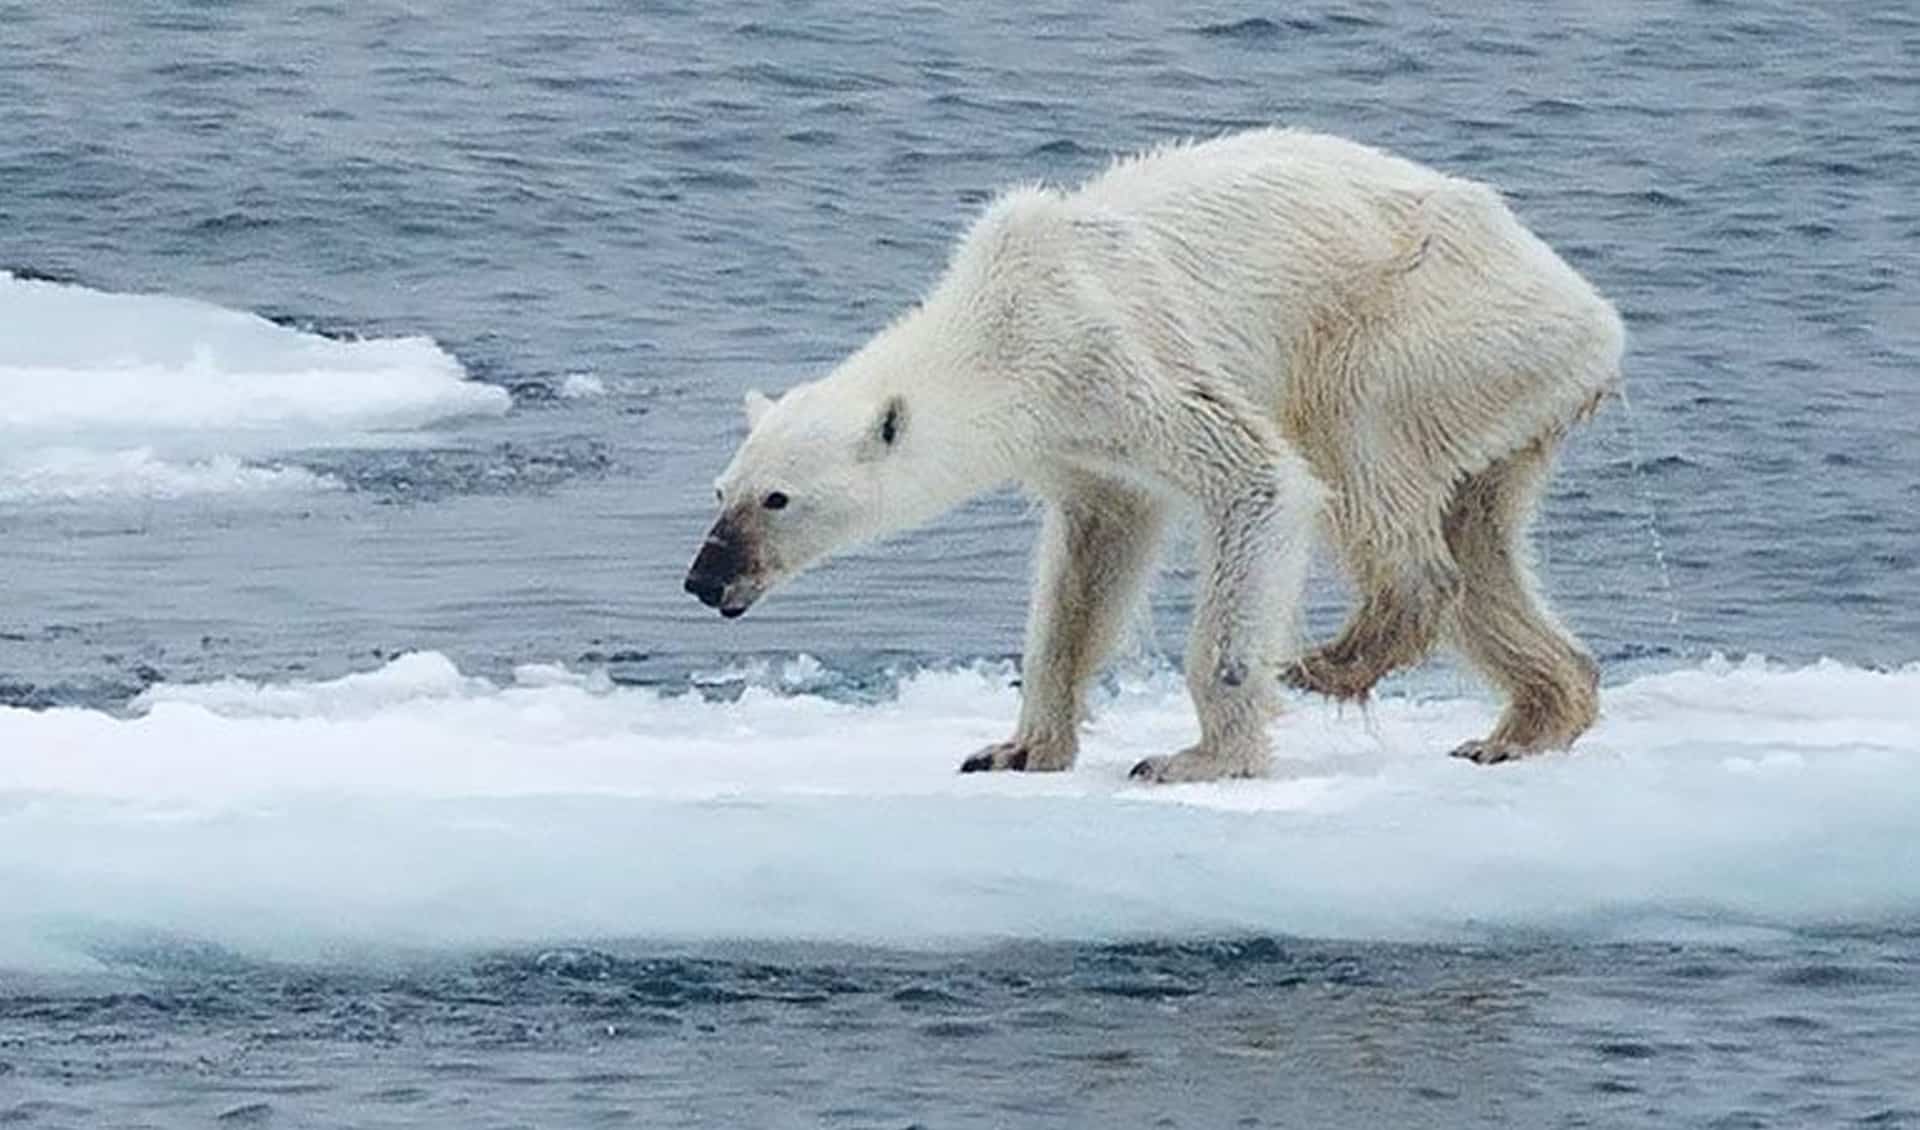 Ways You Can Help Save the Polar Bears